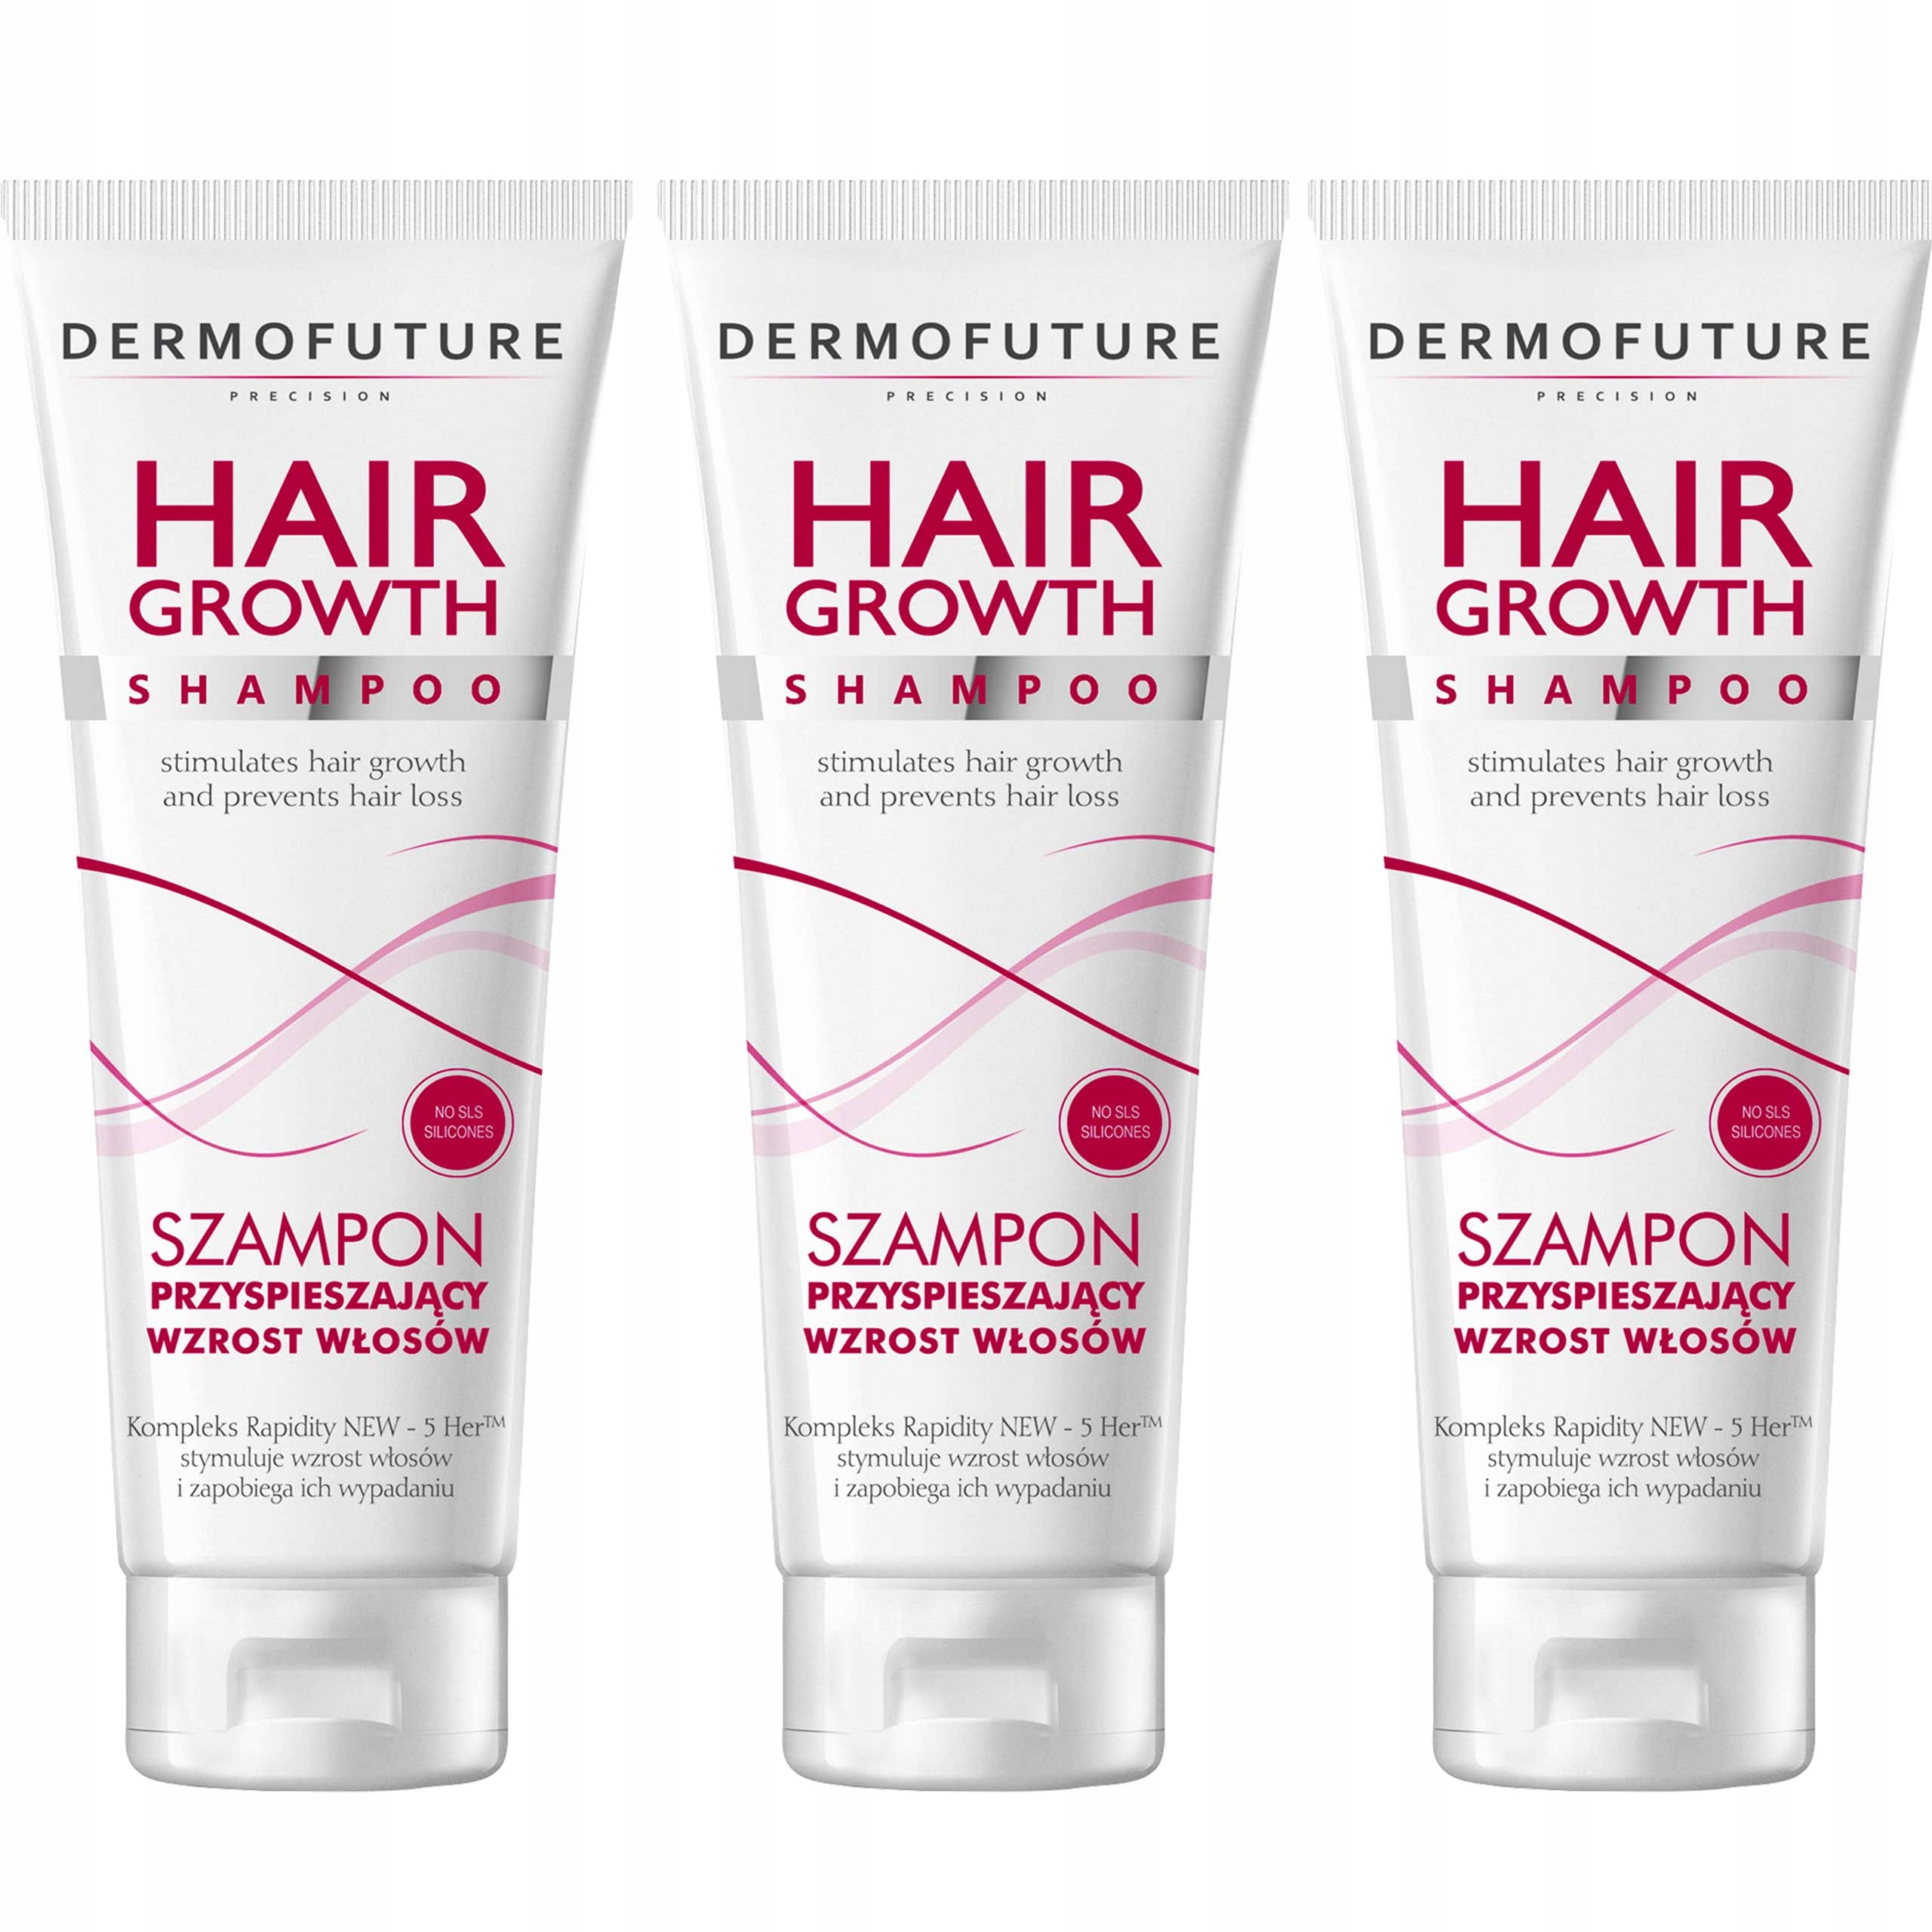 dermofuture precision hair growth szampon przyspieszający wzrost włosów